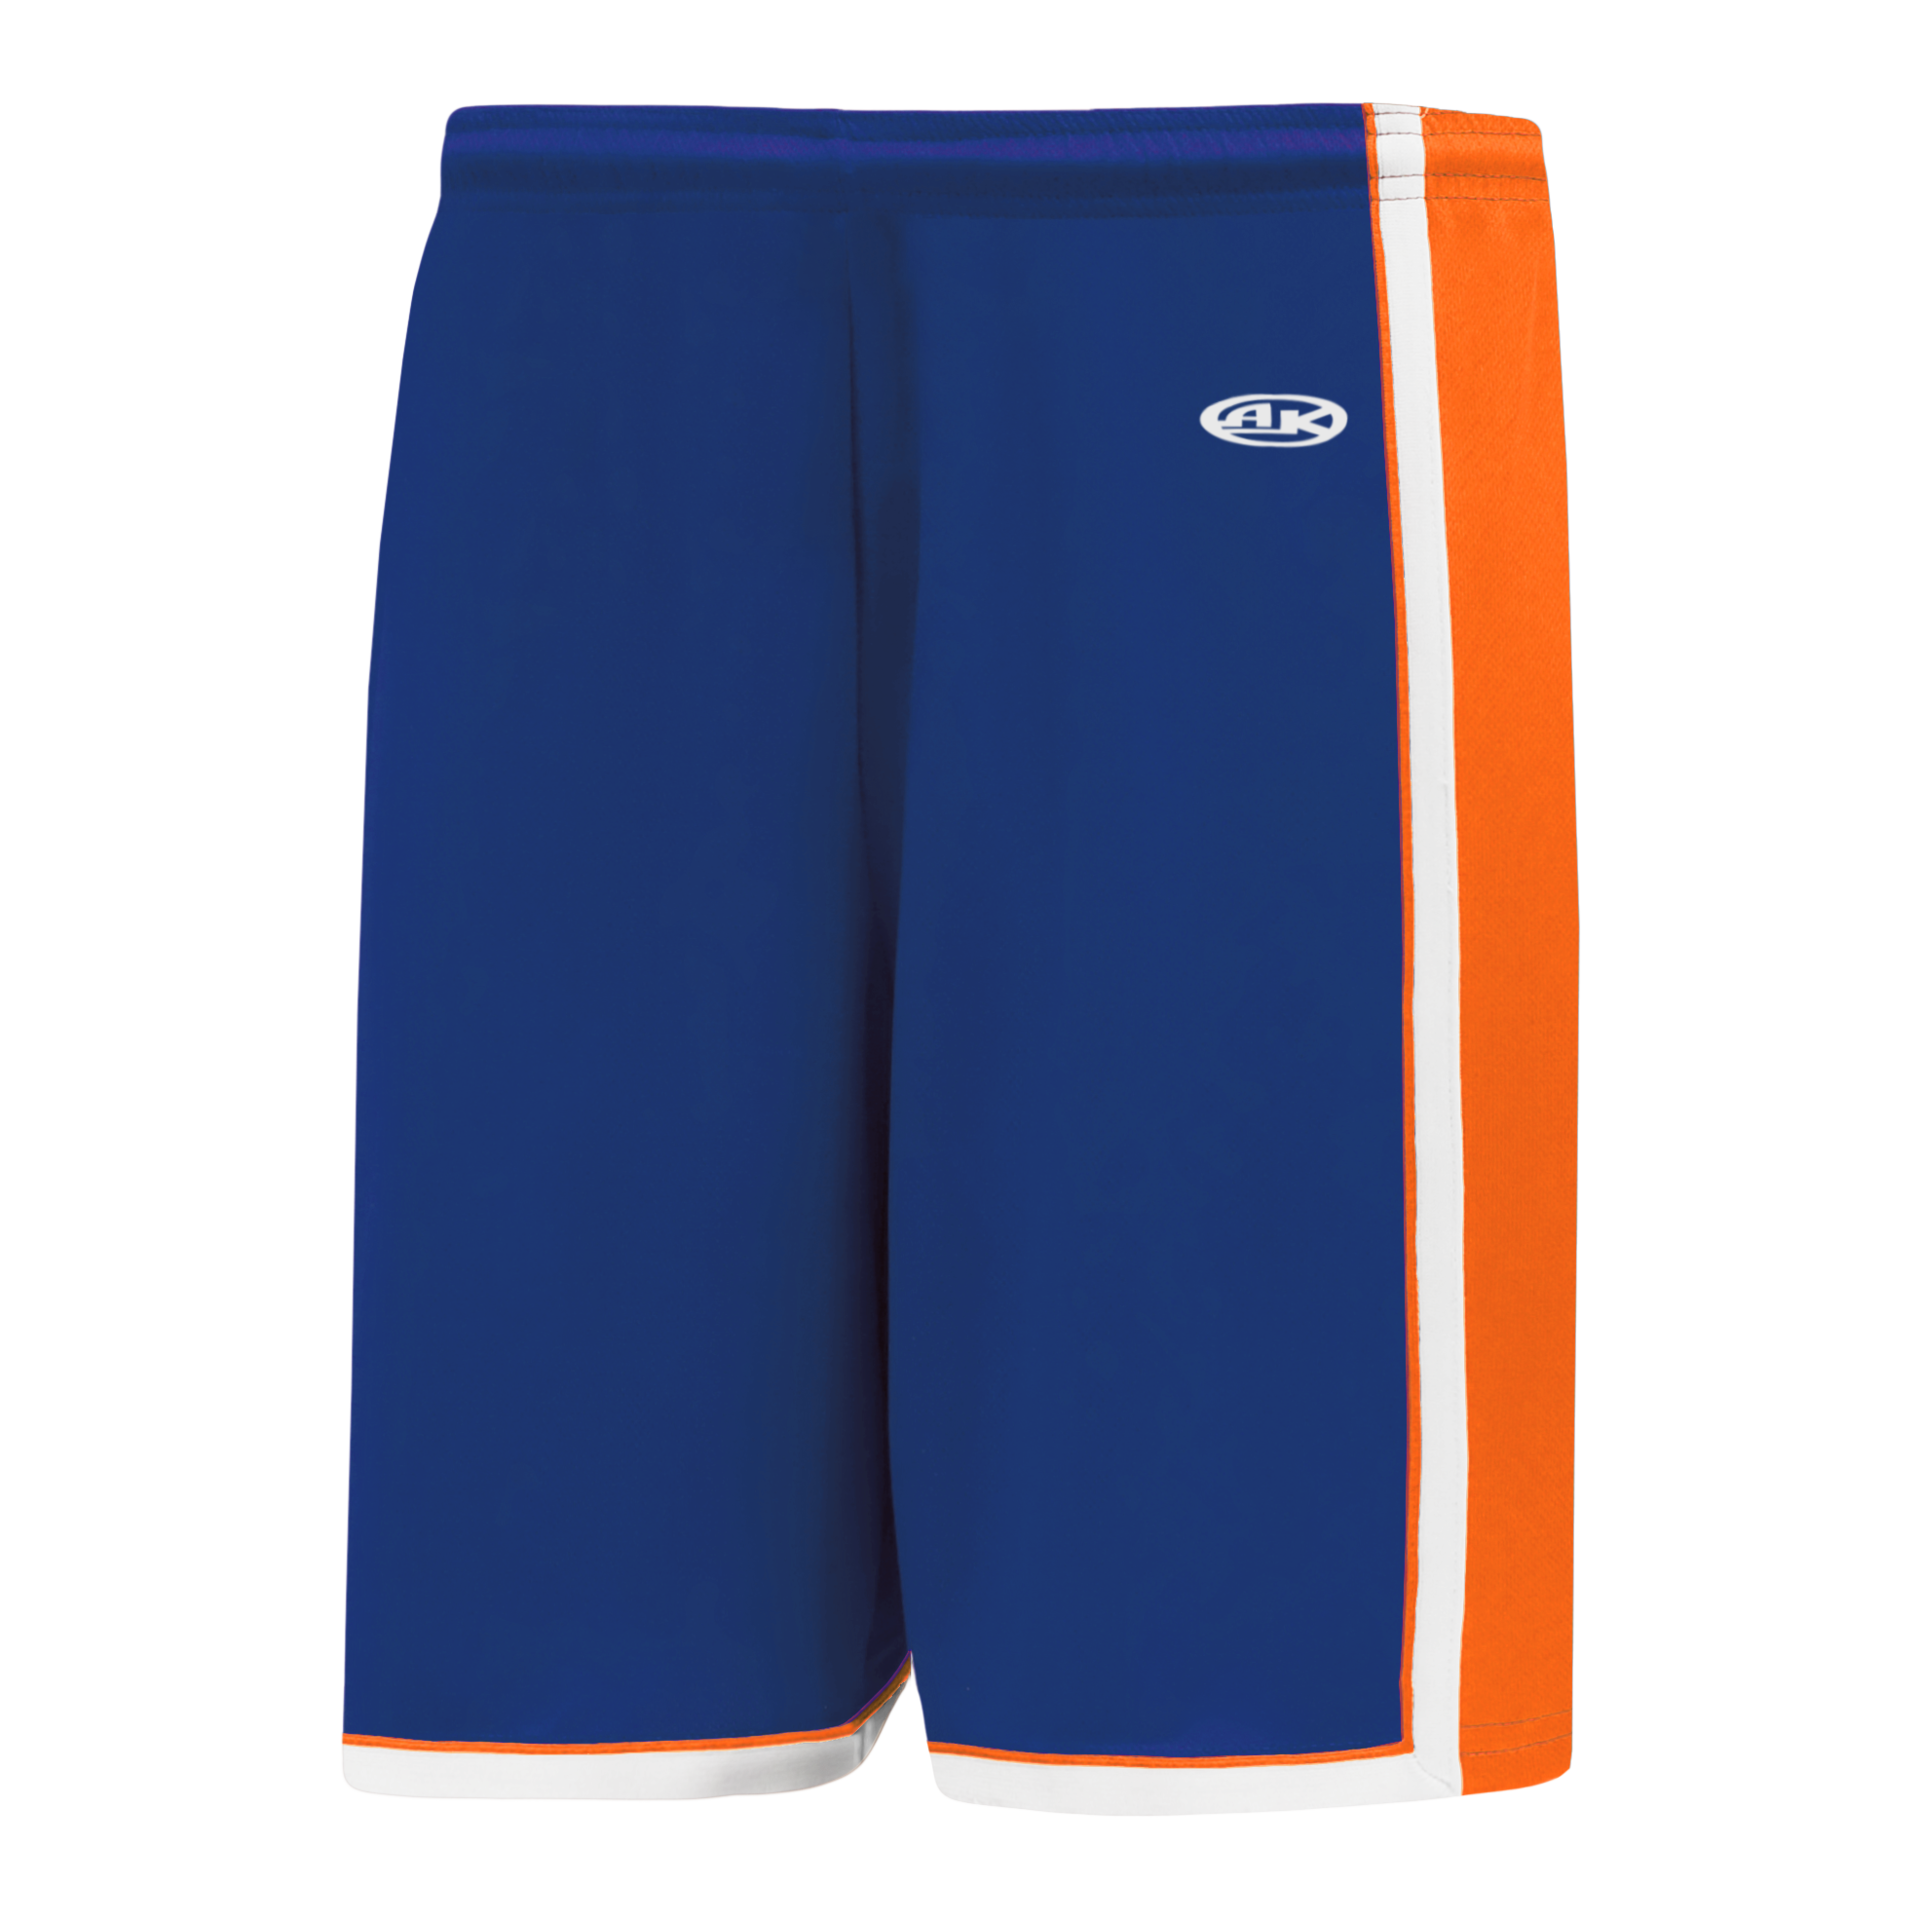 Official New York Knicks Shorts, Basketball Shorts, Gym Shorts